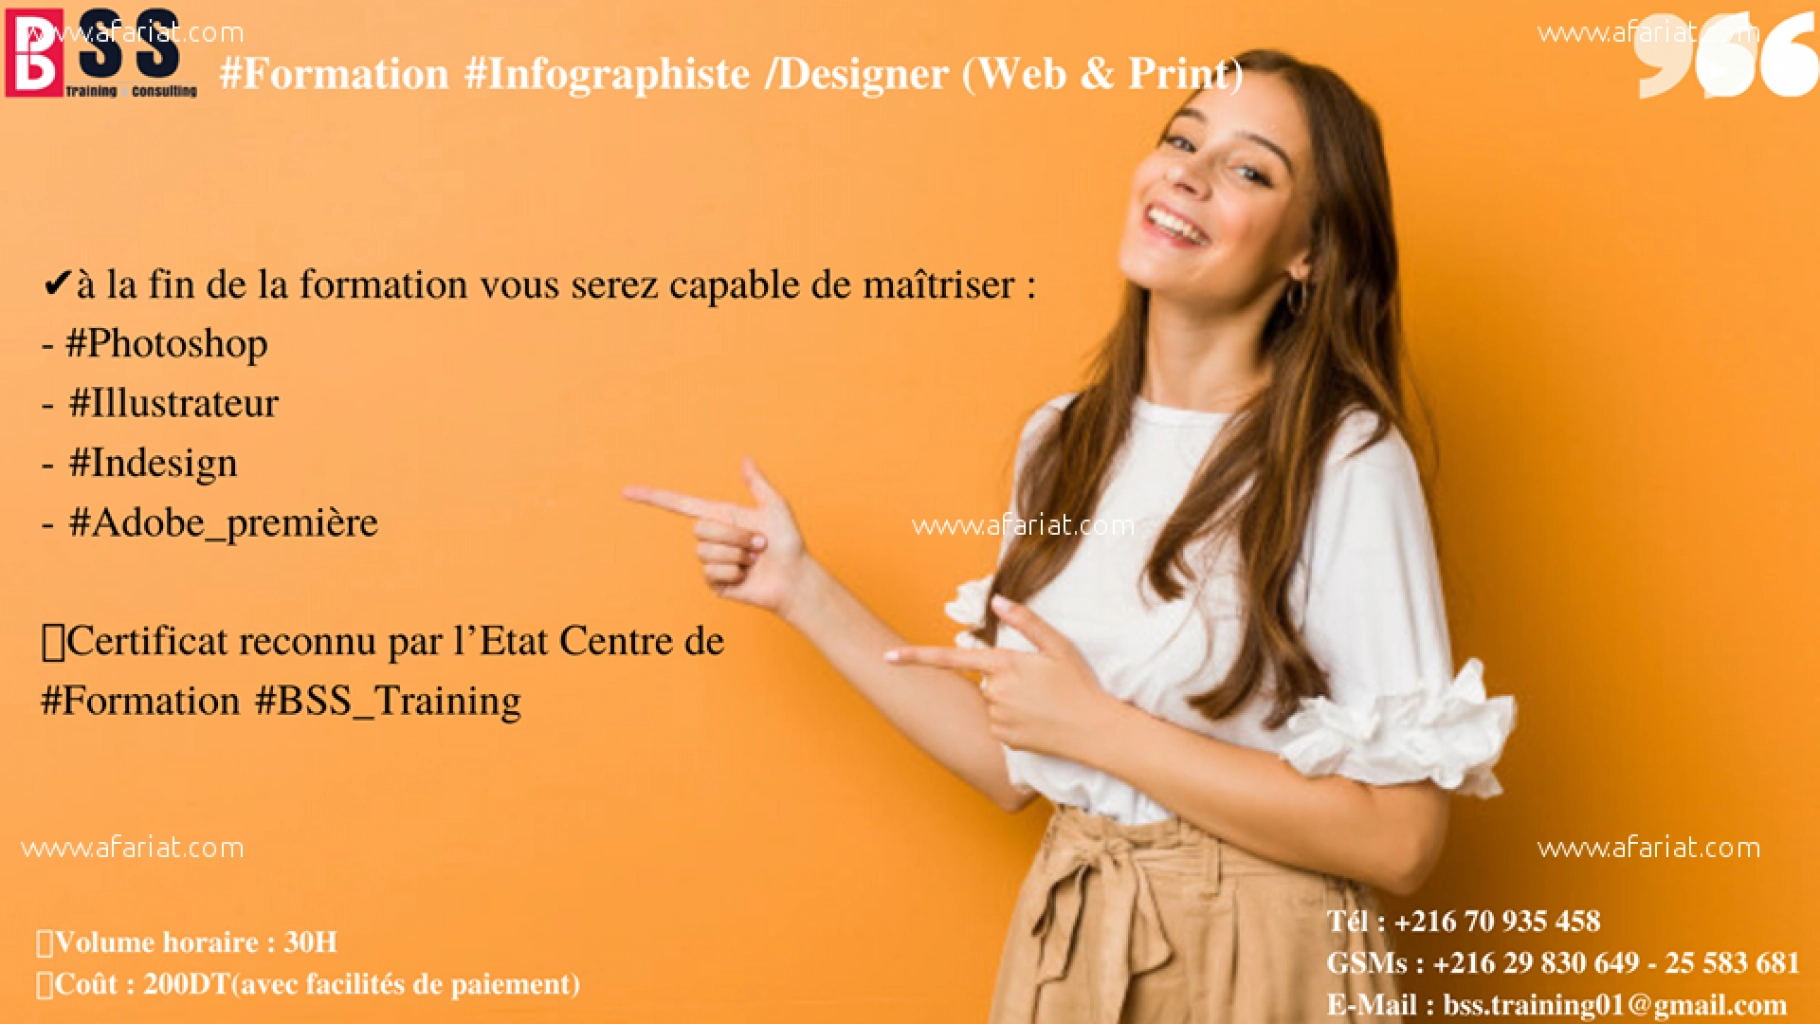 Formation Infographiste /Designer (Web & Print)